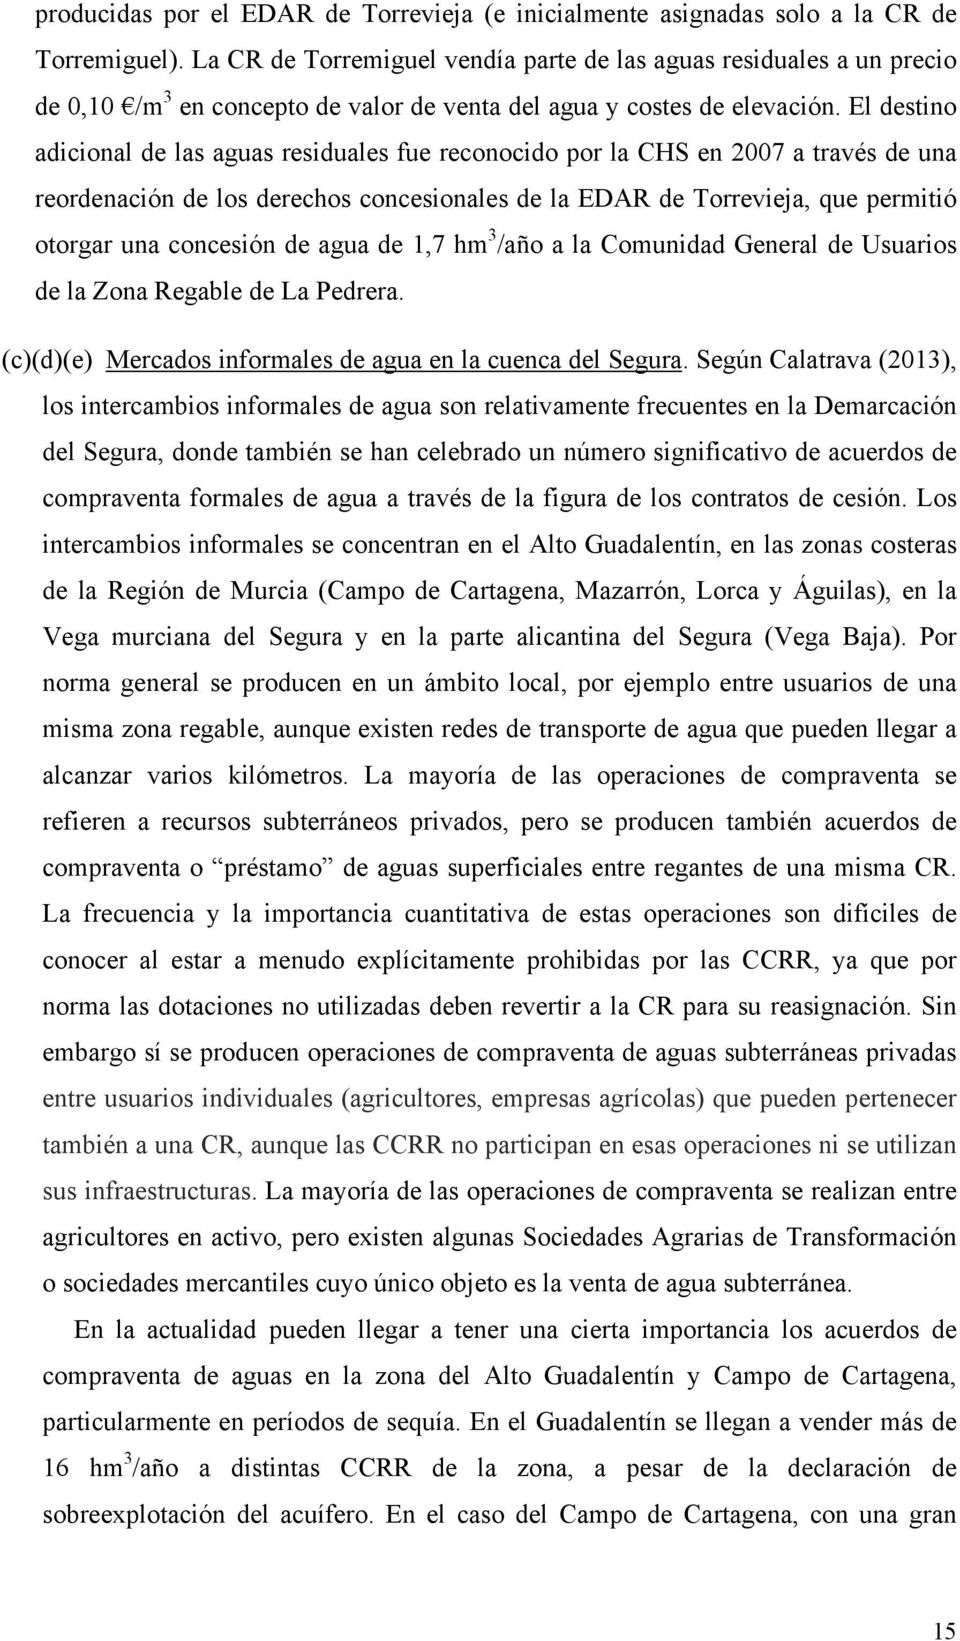 El destino adicional de las aguas residuales fue reconocido por la CHS en 2007 a través de una reordenación de los derechos concesionales de la EDAR de Torrevieja, que permitió otorgar una concesión